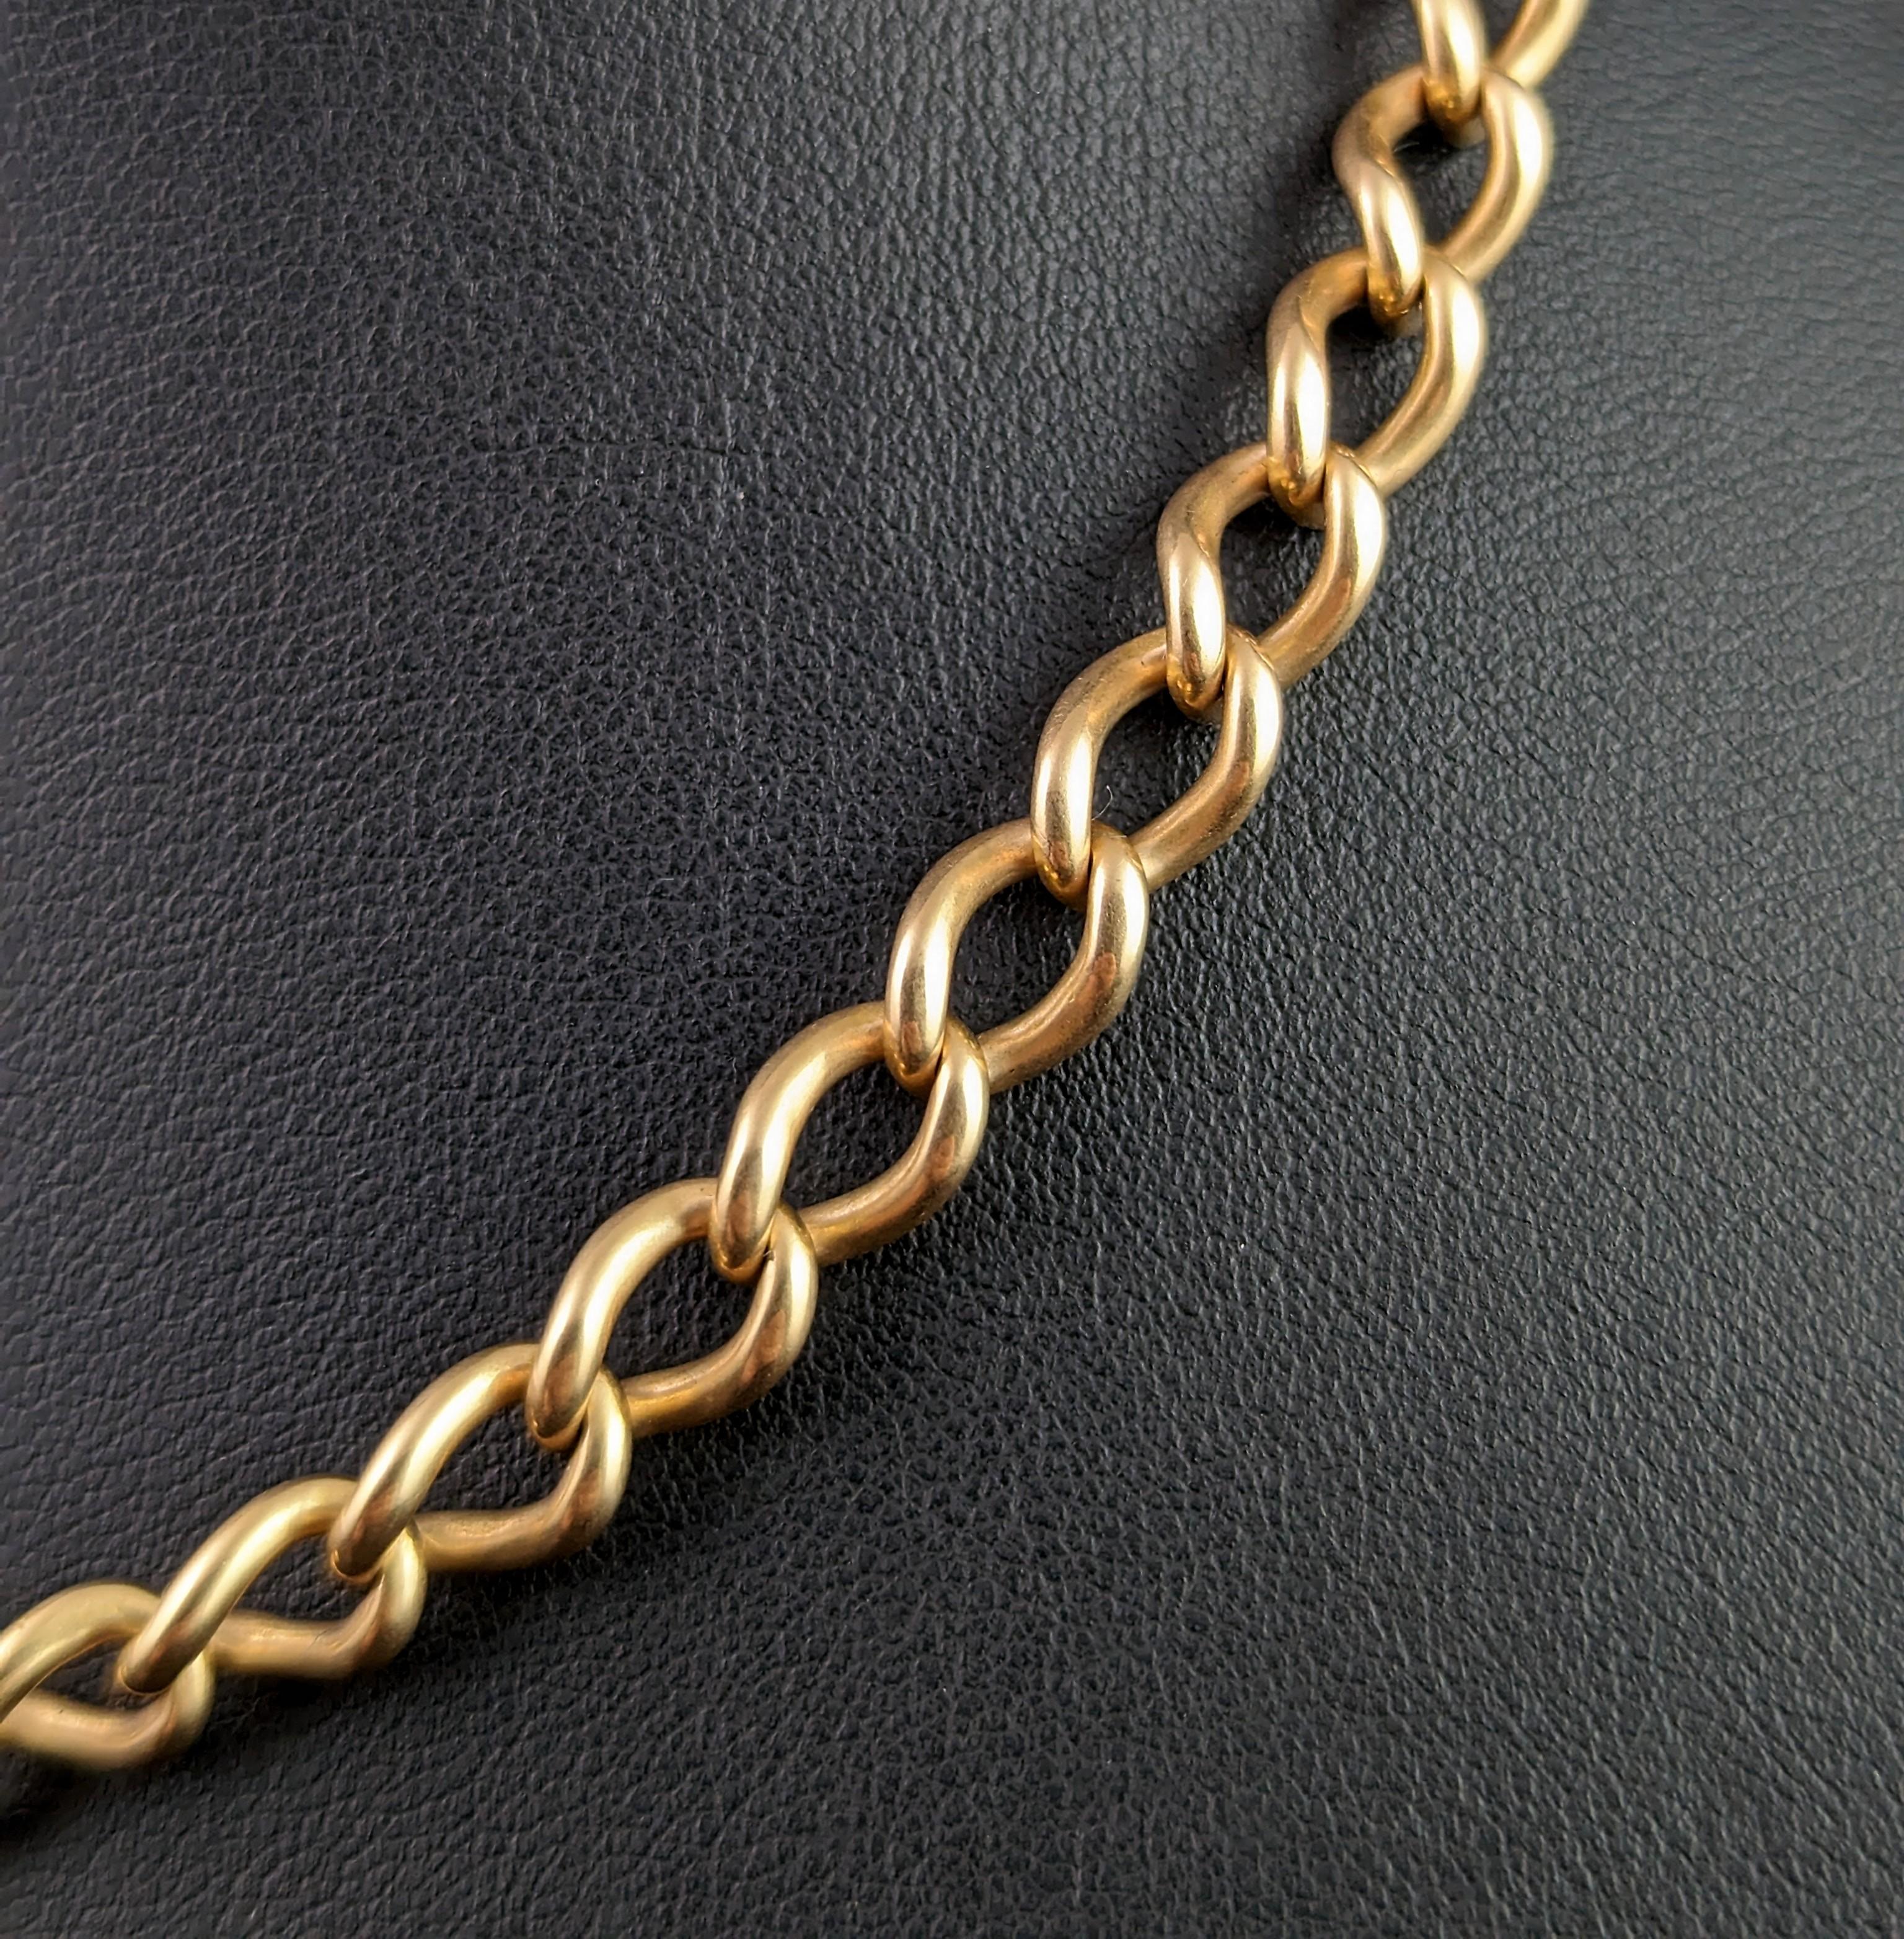 Antique 15k gold Albert chain, Watch chain, heavy  3